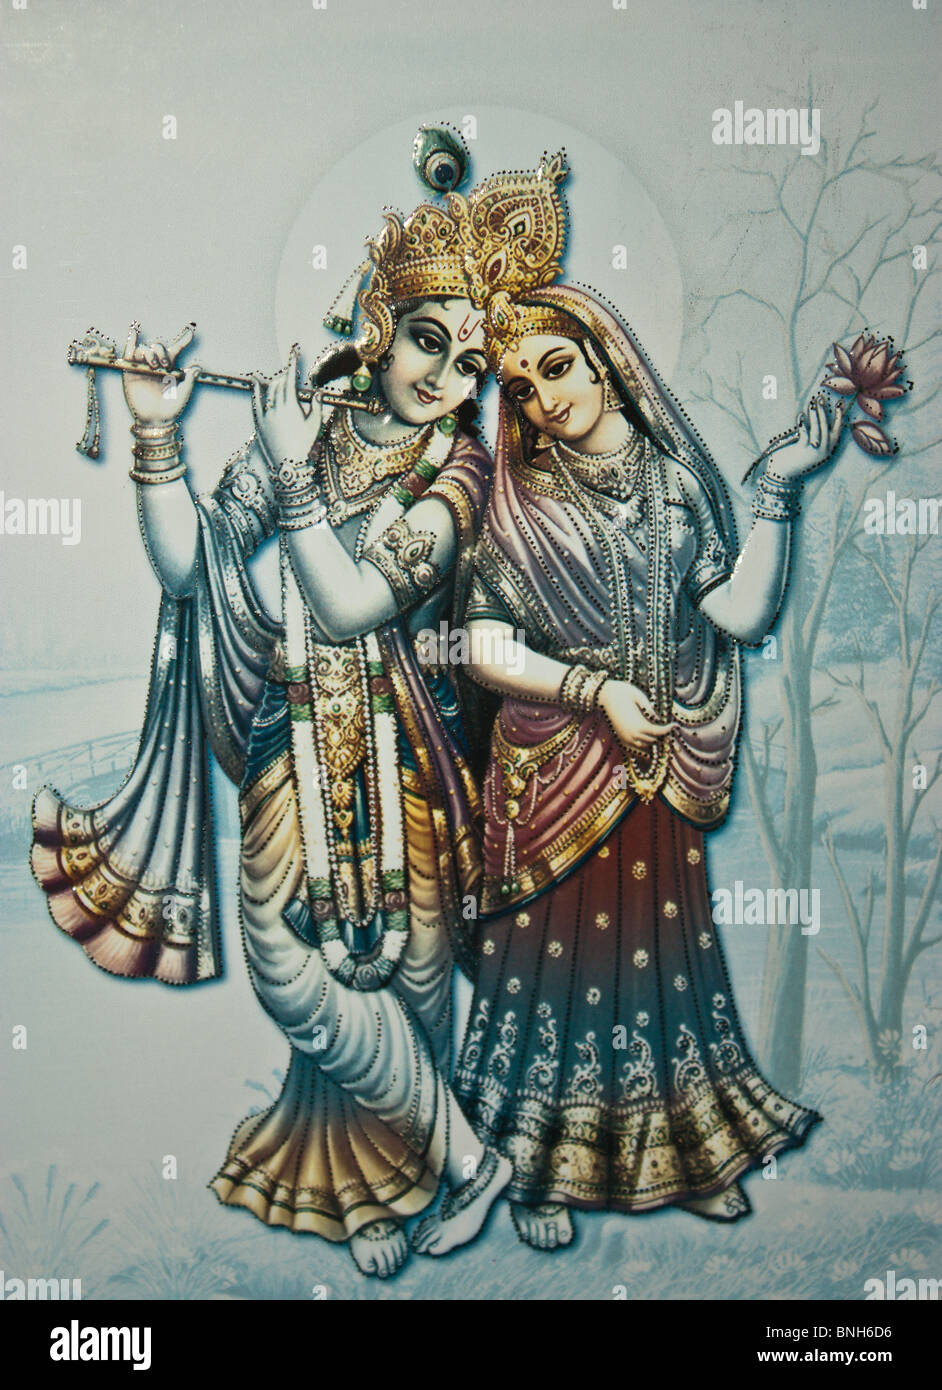 Painting of Hindu mythology gods on paper Stock Photo